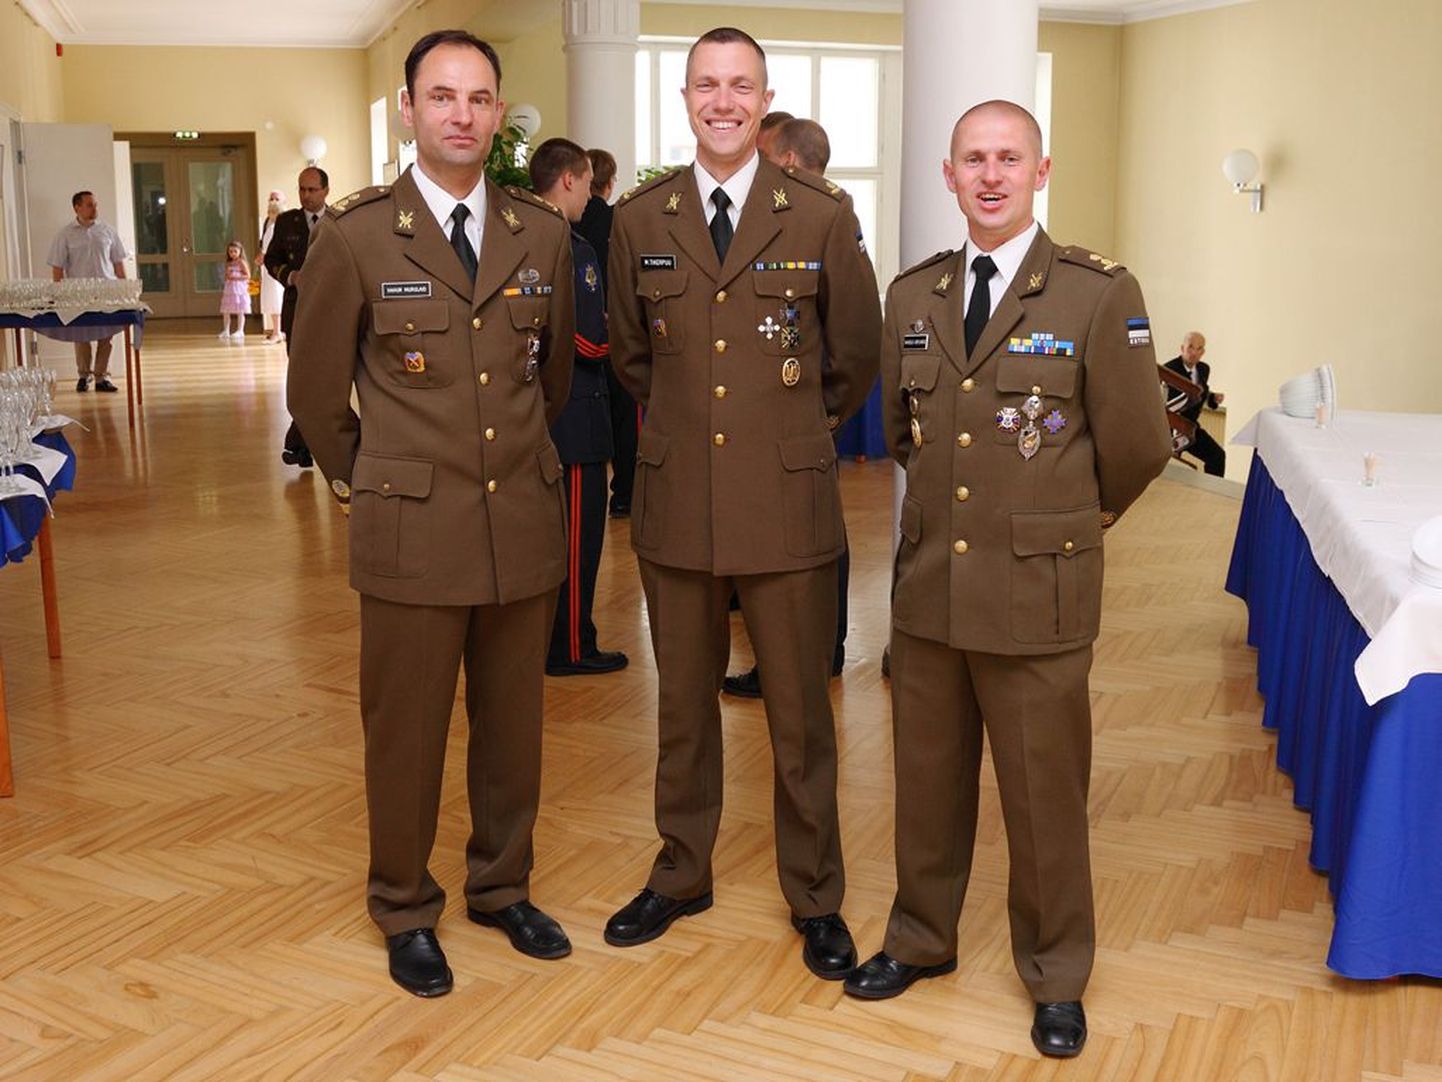 Kolonelleitnant Mati Tikerpuu koos kõrgema sõjakooli endiste ülemate kolonelleitnant Vahur Murulaiu ja kolonelleitnant Margus Koplimäega.